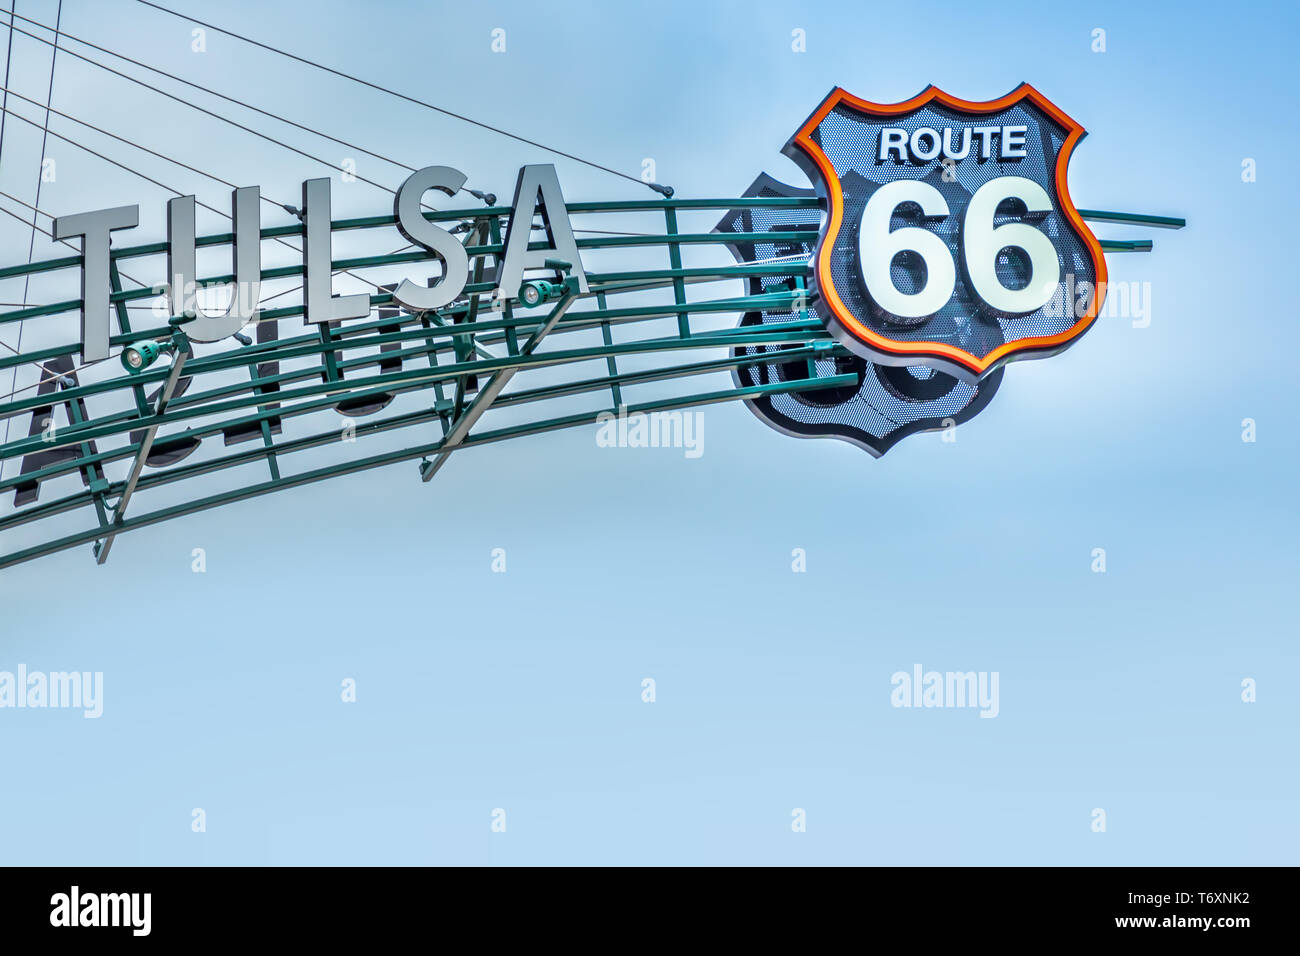 Route 66 sign, Tulsa Oklahoma Stock Photo